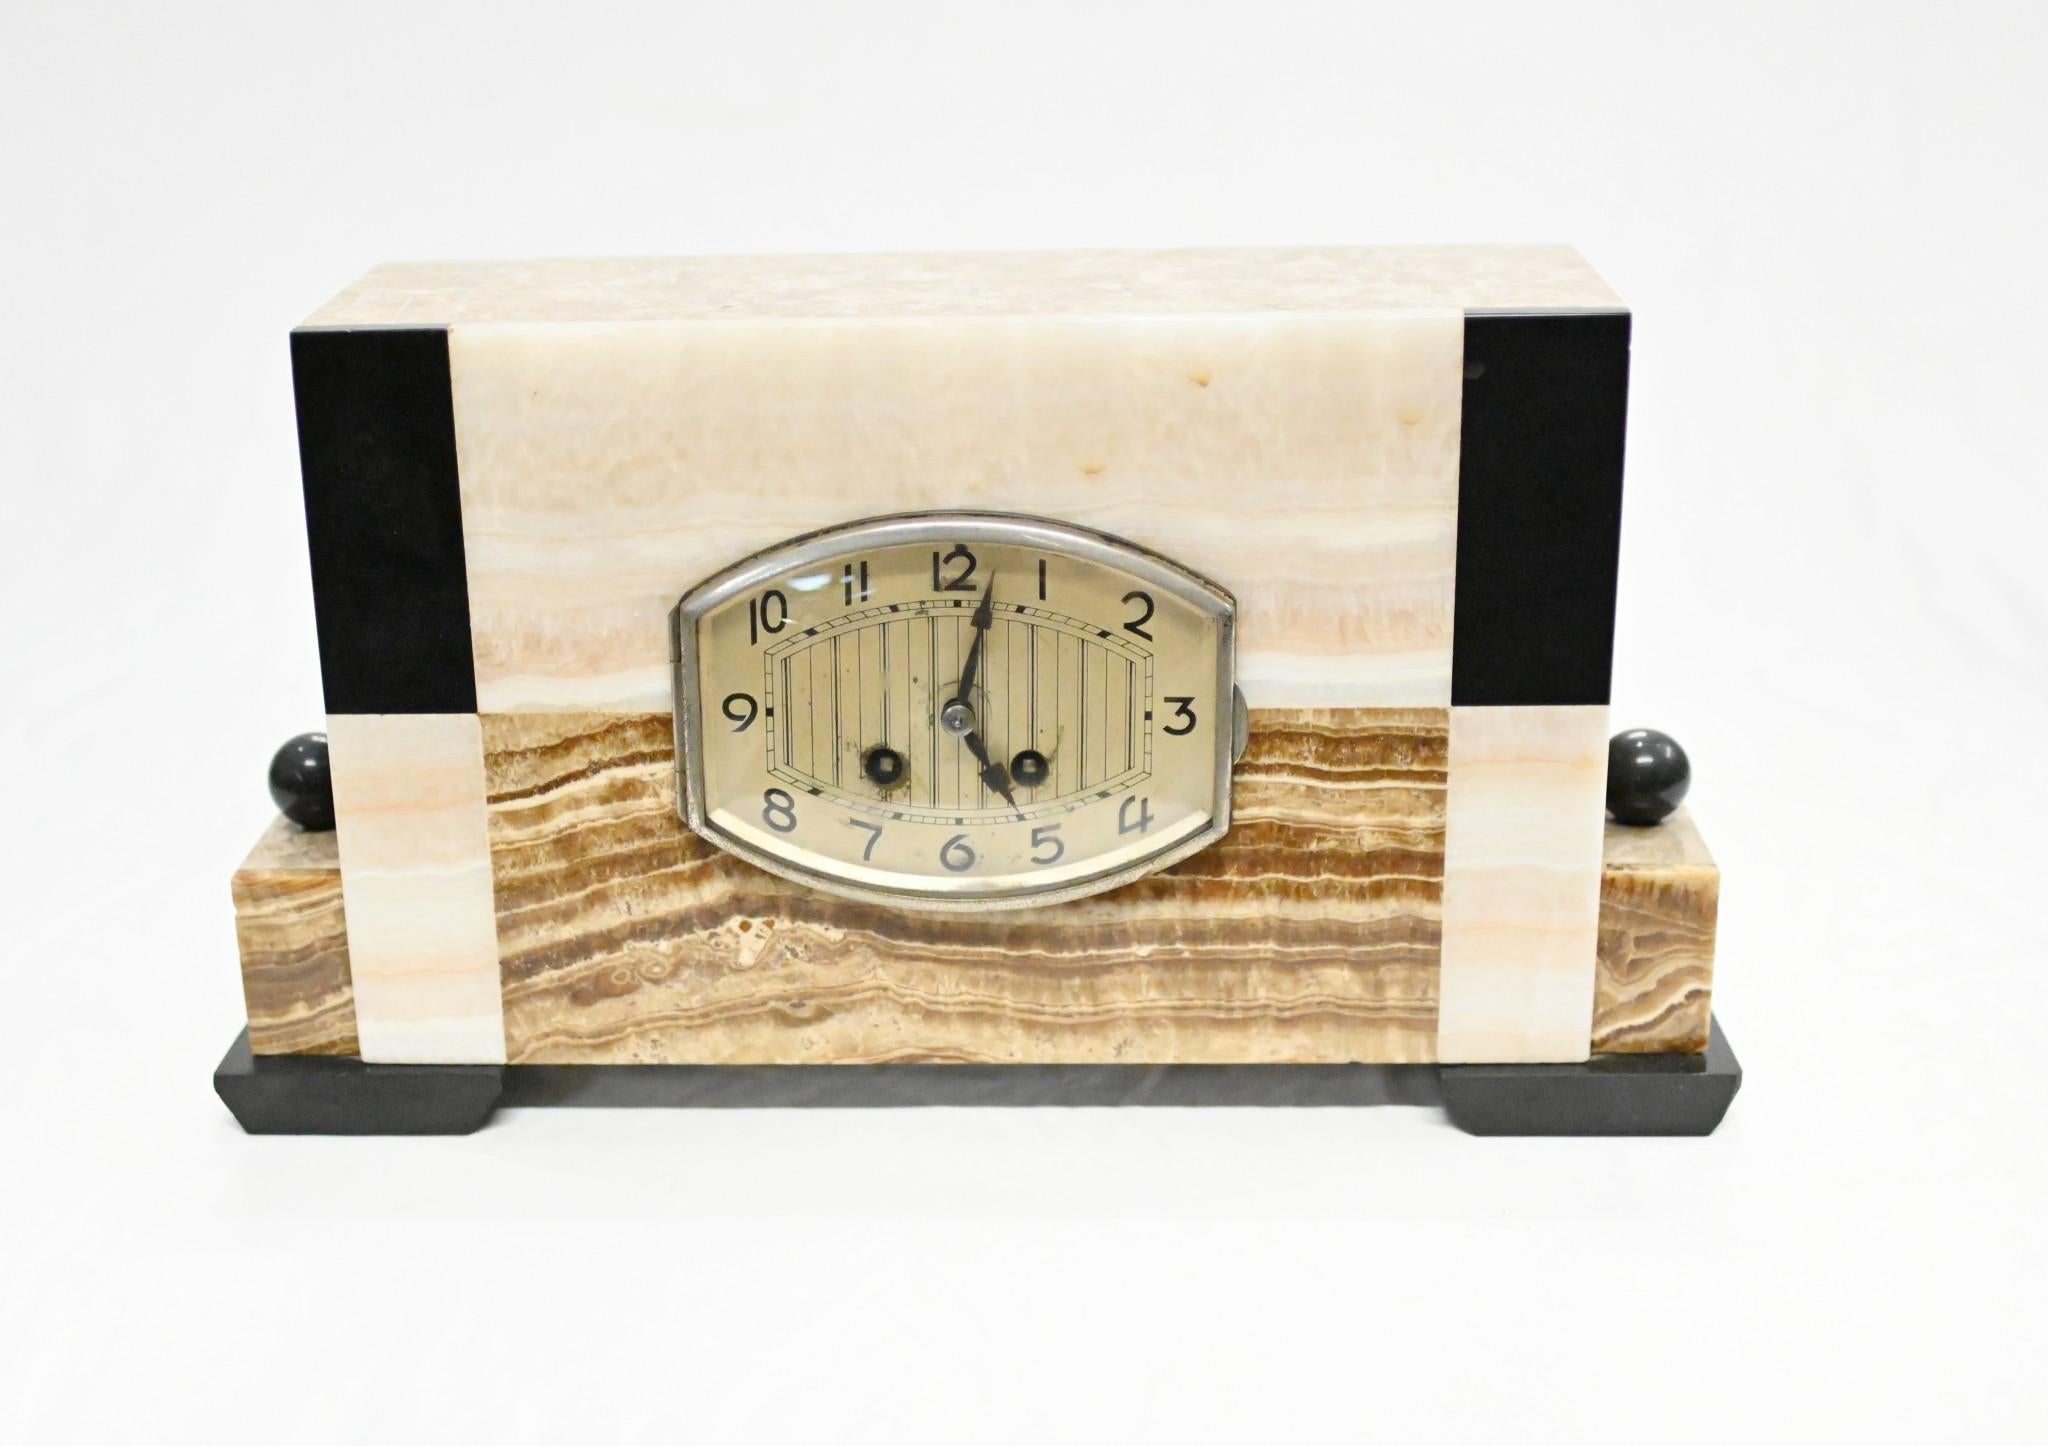 Französische Art-déco-Uhr mit hohem Sammlerwert
CIRCA 1930, also Art déco der Zeit
Klassisches symmetrisches Design mit den verschiedenfarbigen Murmeln
Gekauft bei einem Händler am Marche Biron auf dem Pariser Antiquitätenmarkt
Angeboten in großer